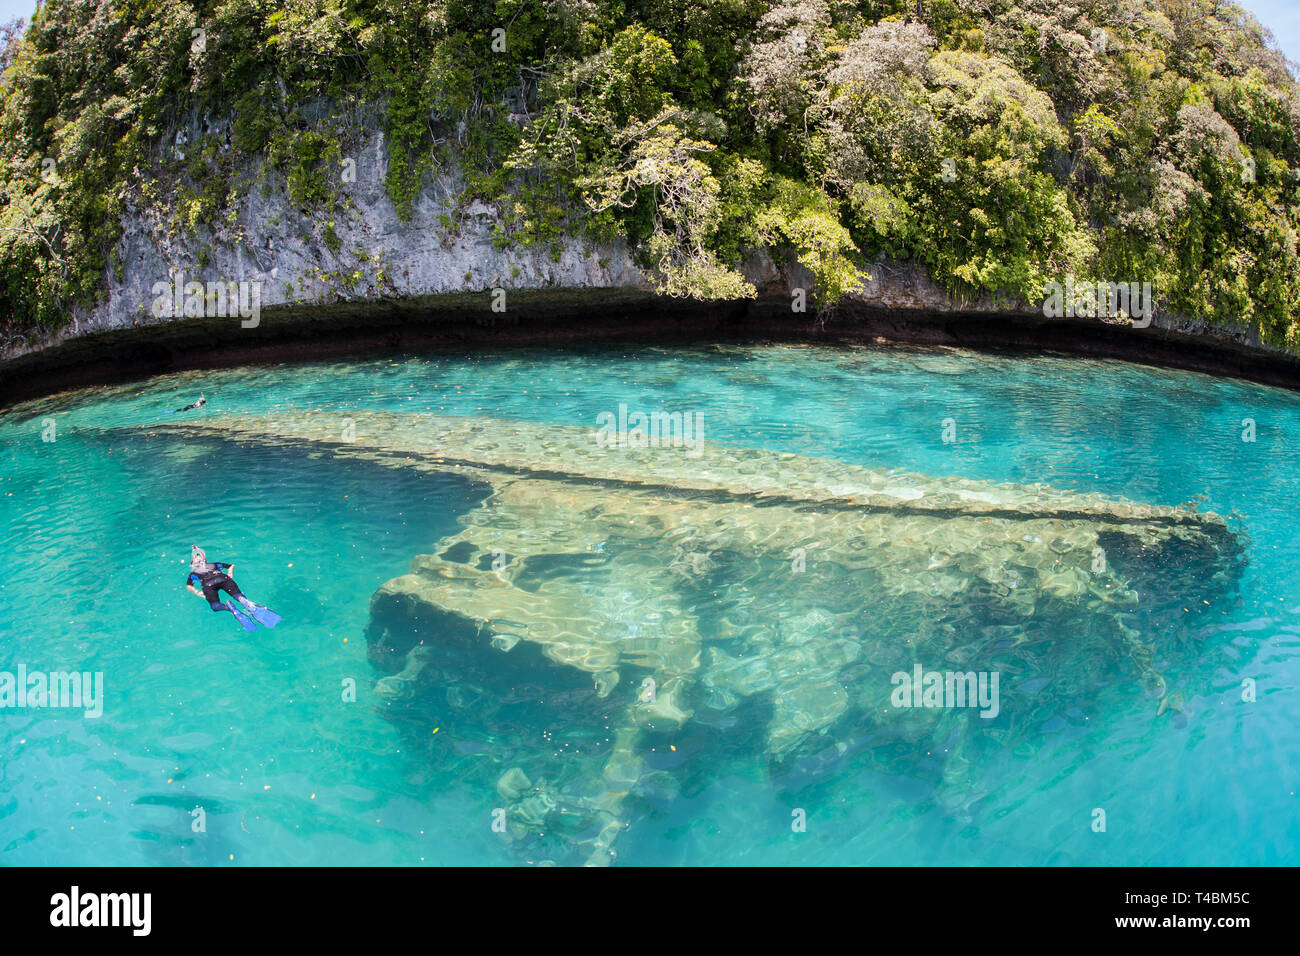 Schnorchler eine flache Schiffswrack entdecken Sie inmitten der Kalkstein Inseln von Palau. Diese schöne Insel - Nation ist am besten für seine marine Artenvielfalt bekannt. Stockfoto